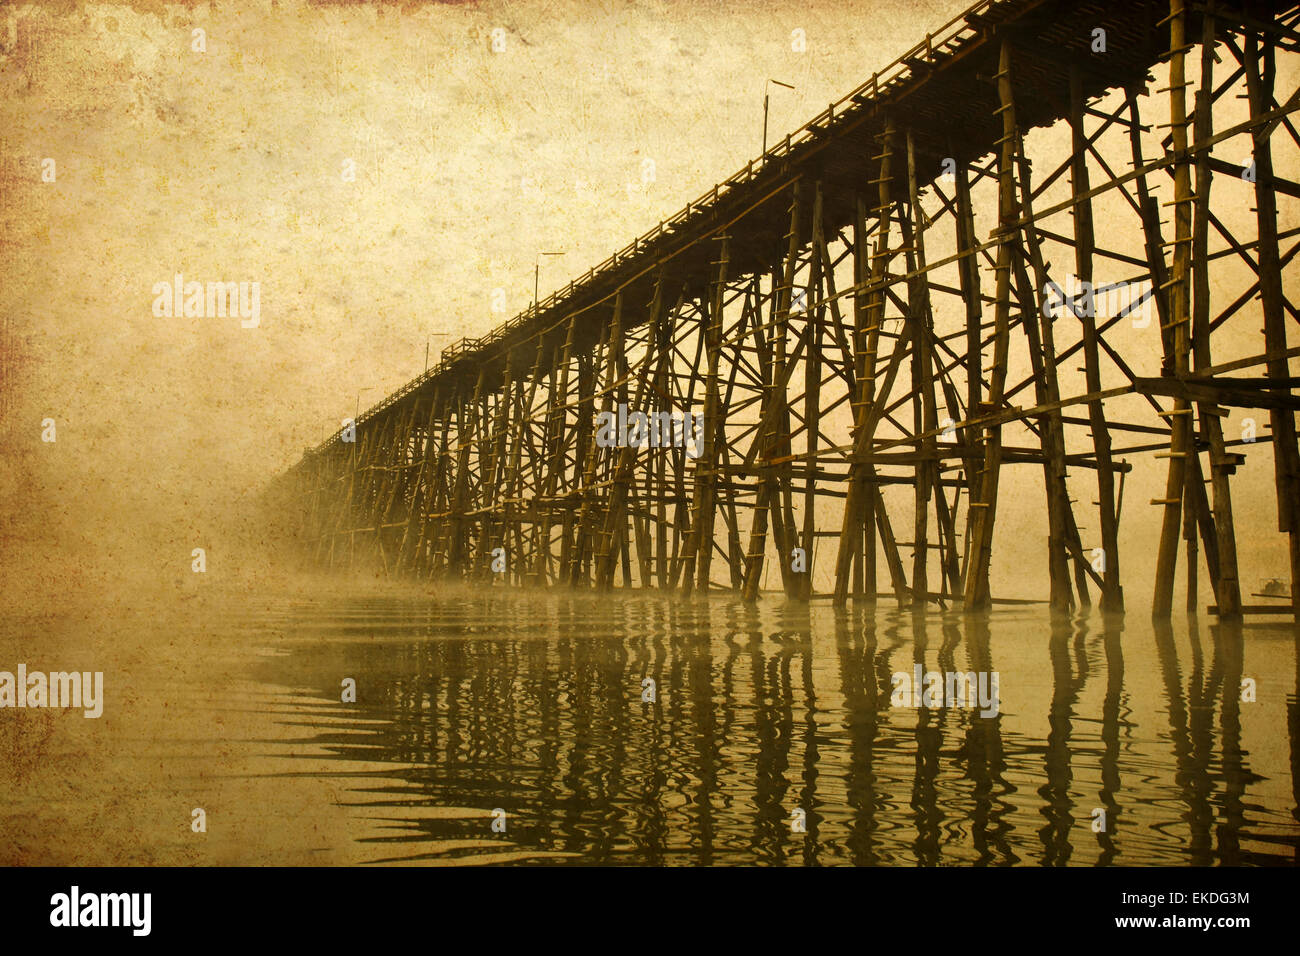 La estructura del puente de madera más larga en la imagen antigua Foto de stock